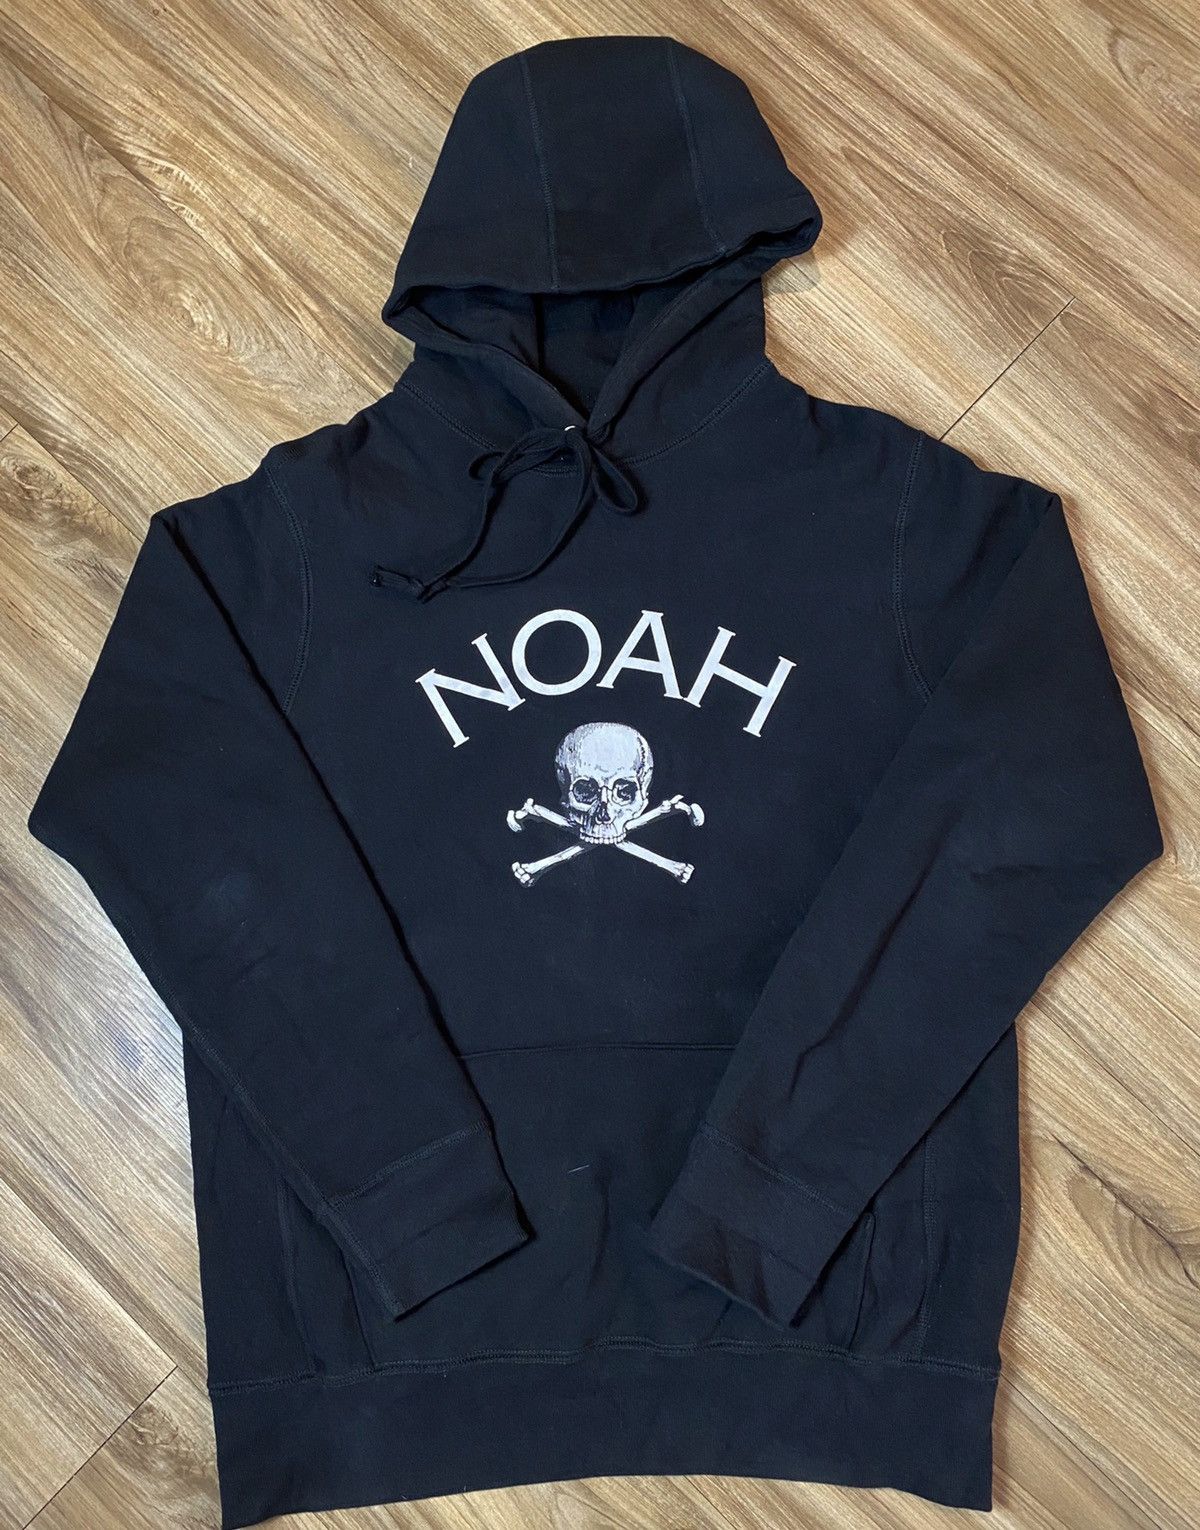 Noah Noah Jolly Roger Hoodie | Grailed